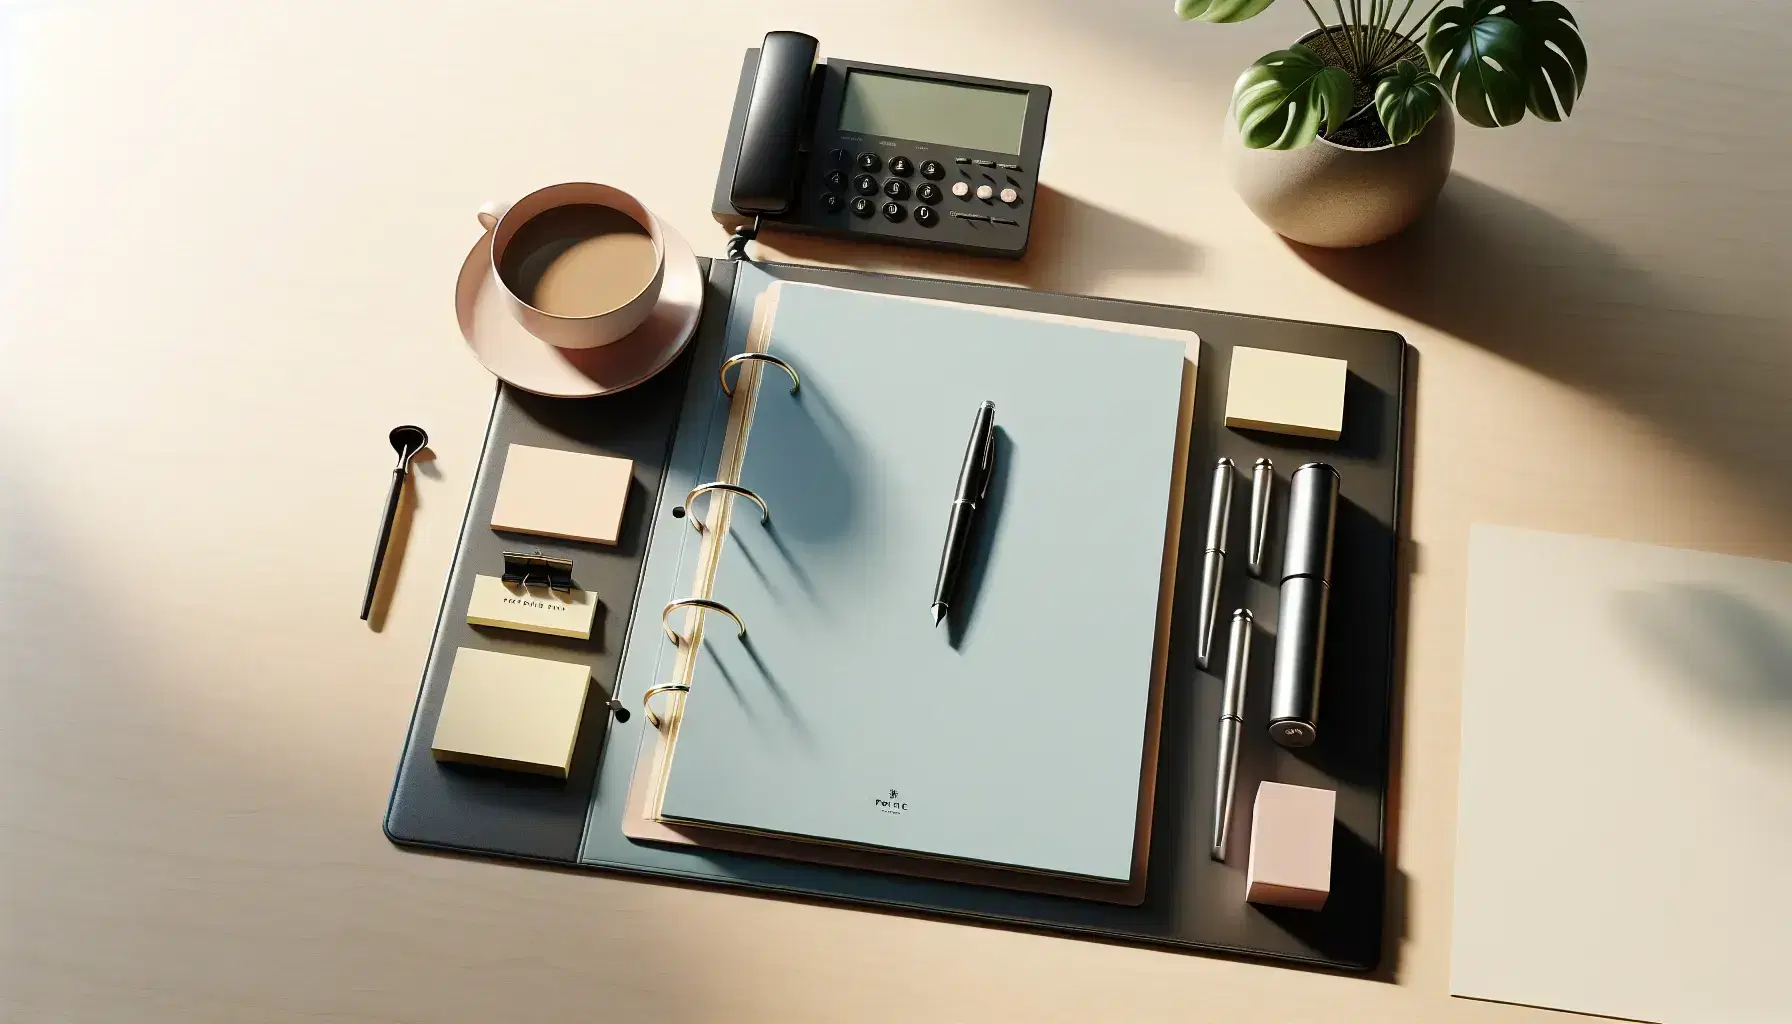 Escritorio de oficina de madera clara con carpeta azul abierta, bolígrafo negro, bloc de notas amarillo, teléfono fijo moderno y planta pequeña, con taza de café parcialmente visible.